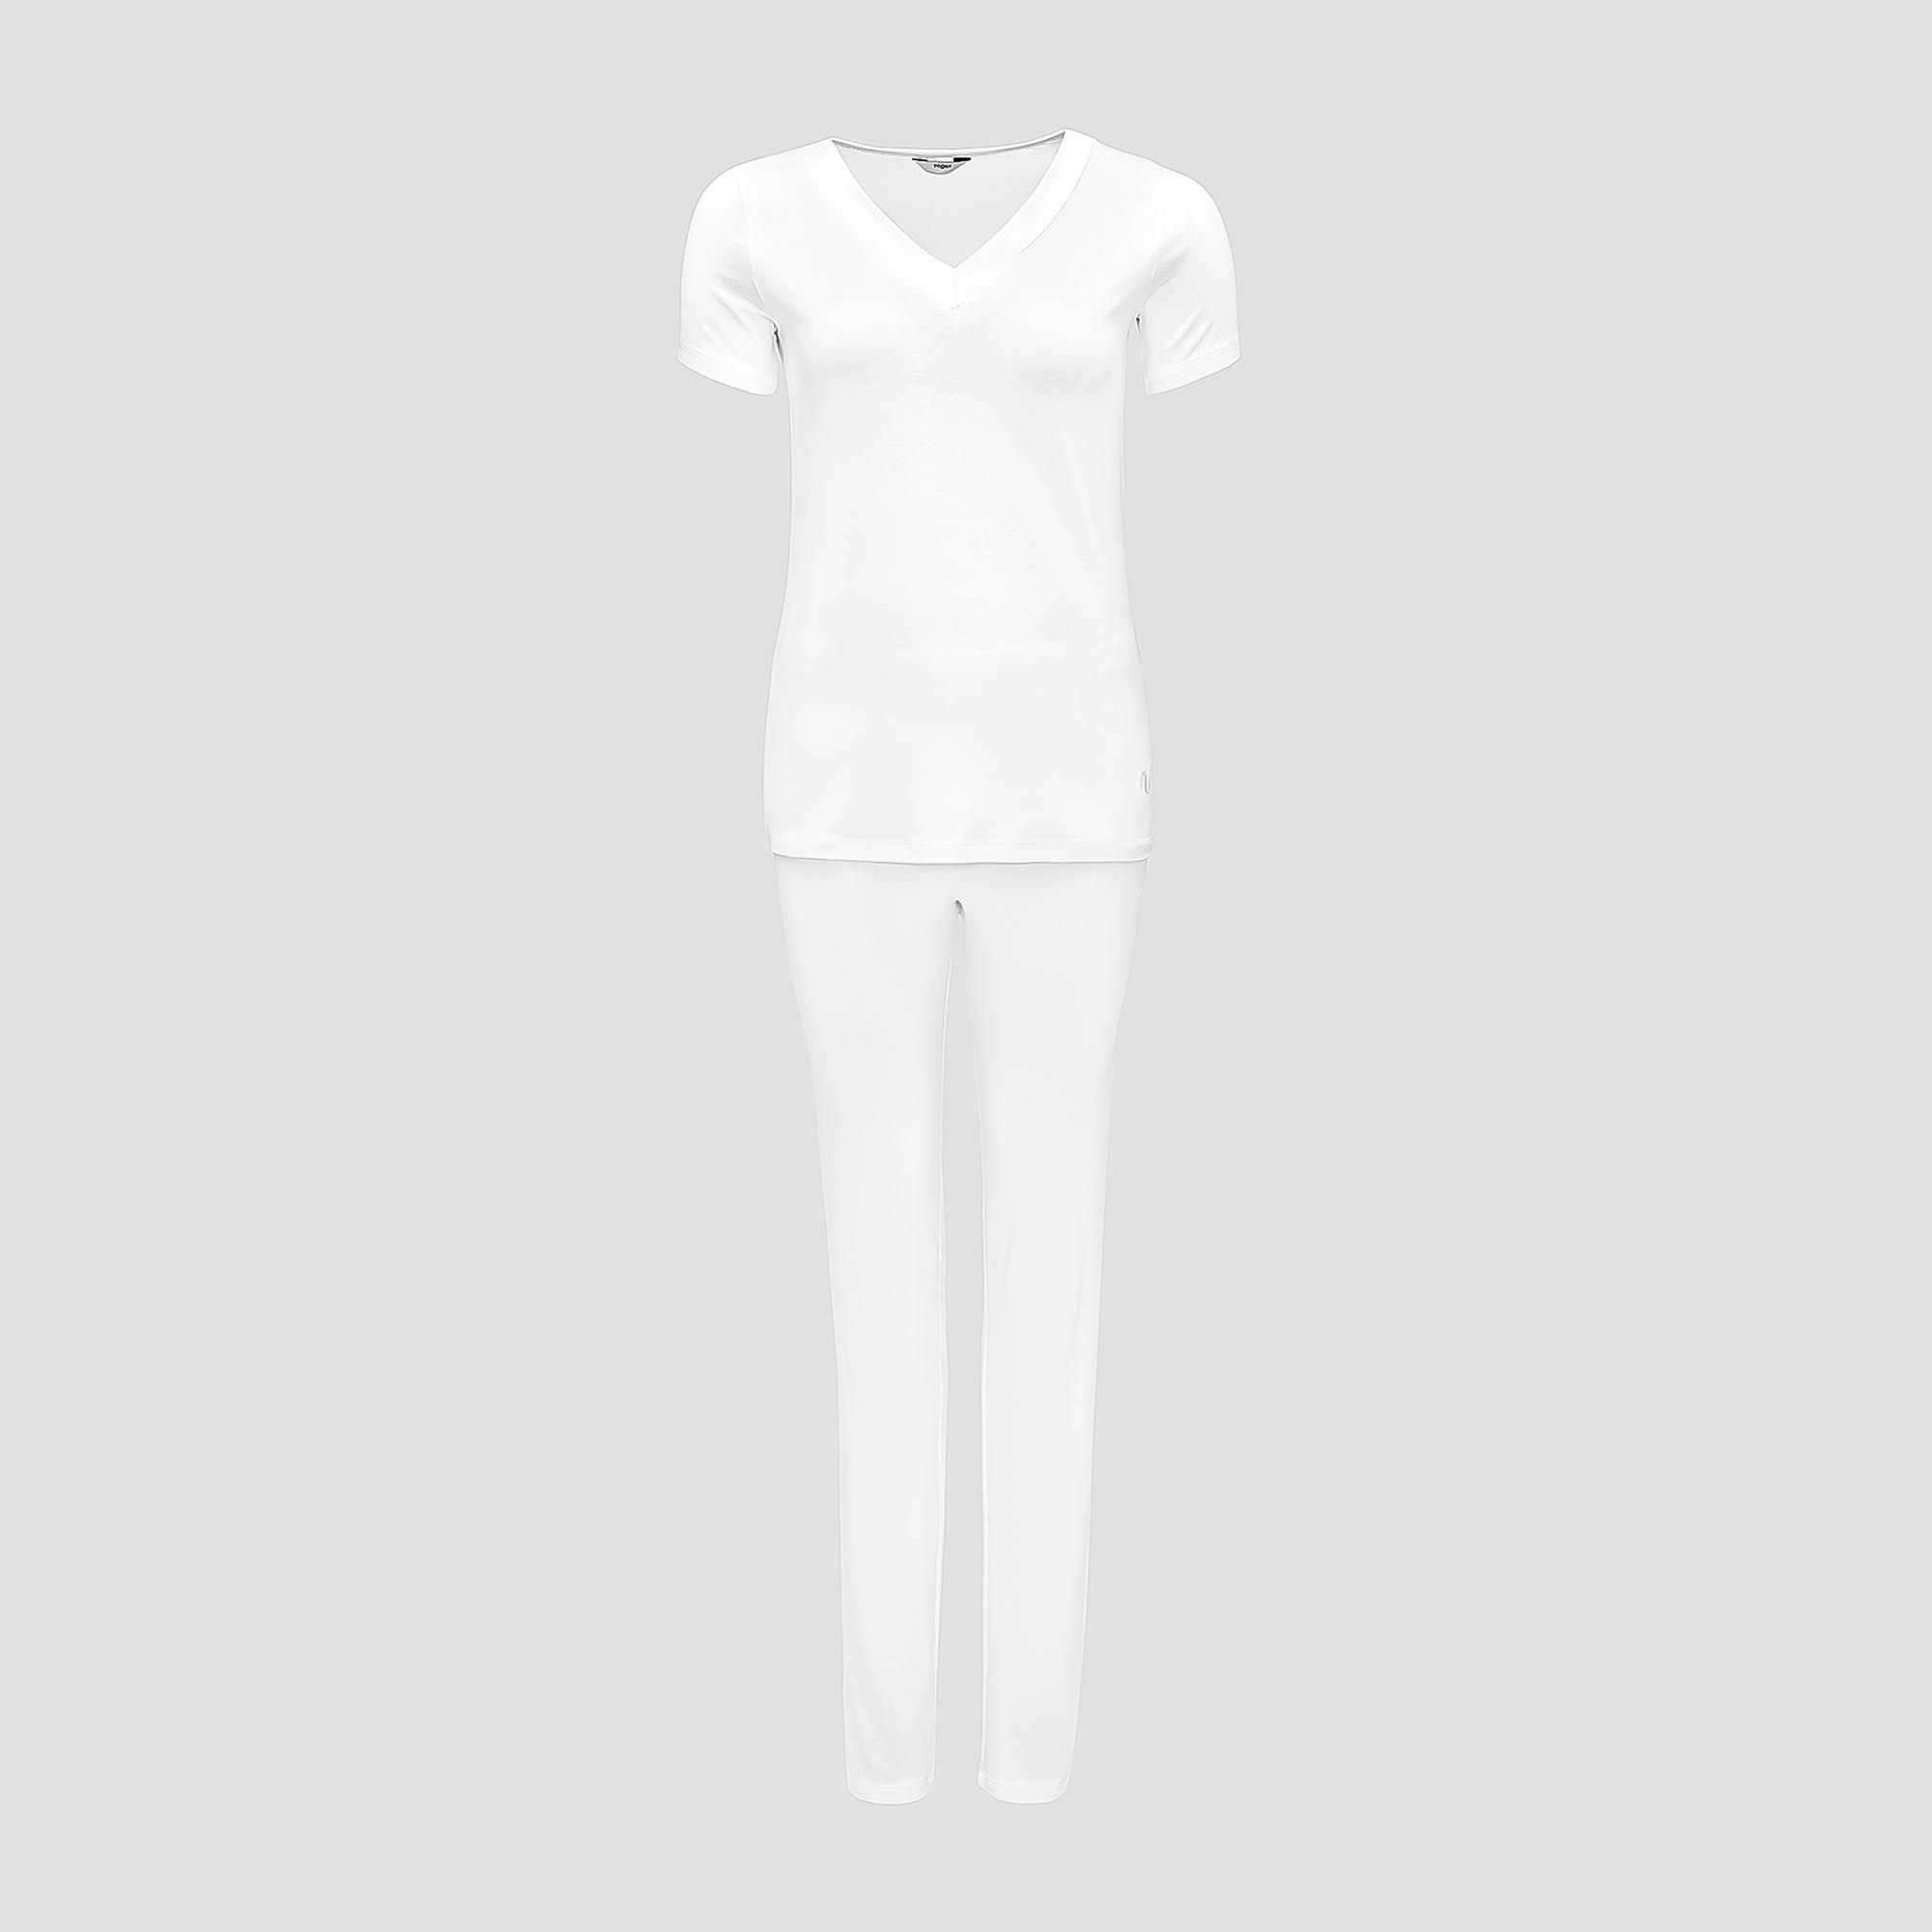 Пижама Togas Ингелла белая женская S(44) 2 предмета пижама брюки